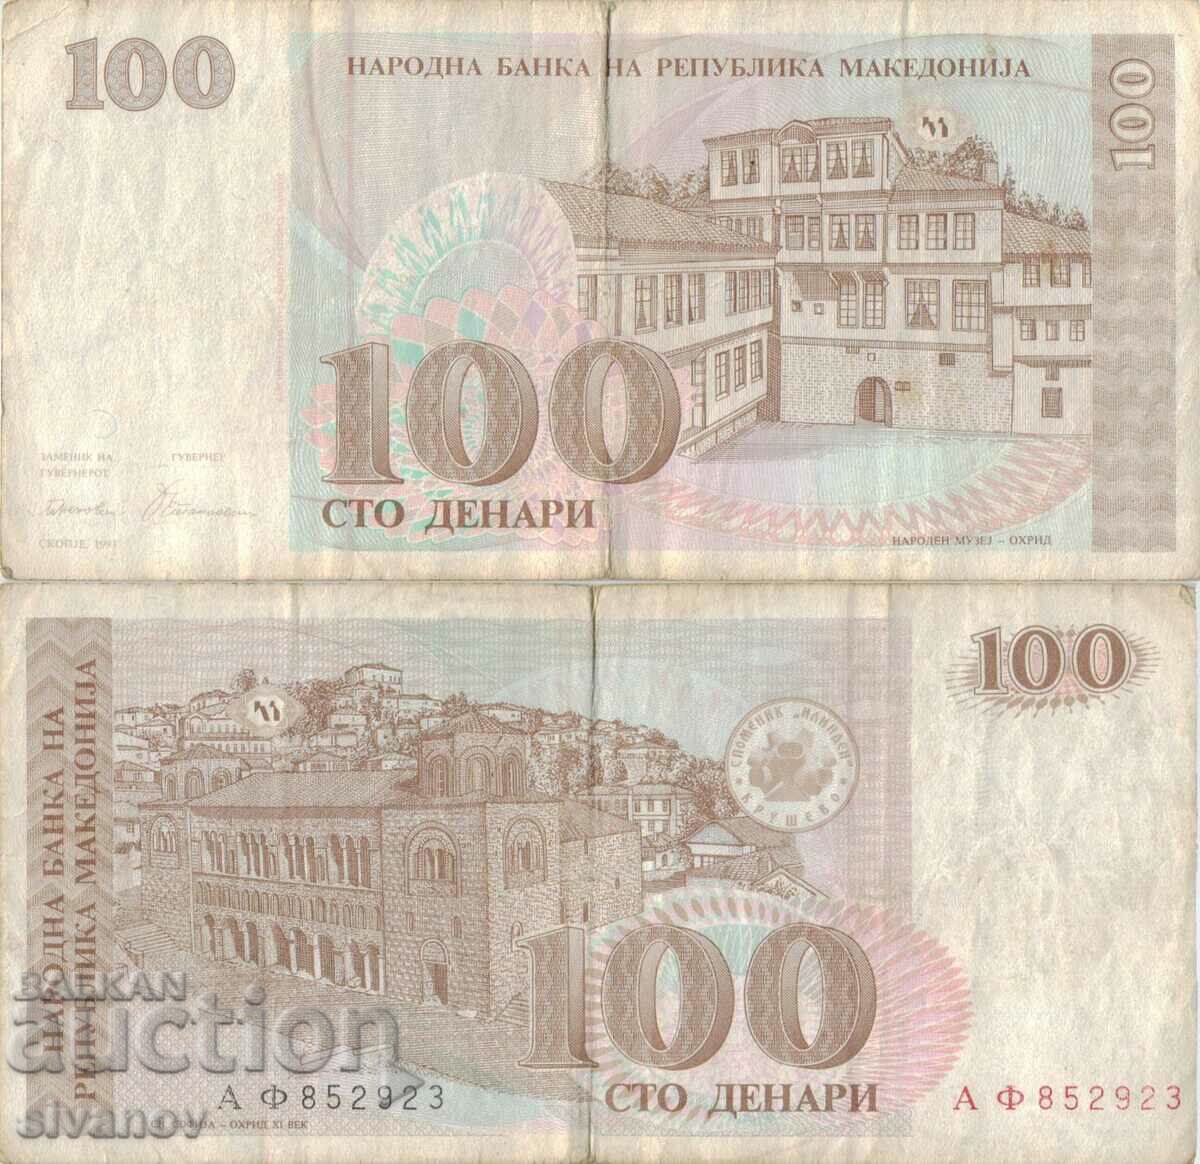 Μακεδονία 100 denar τραπεζογραμμάτιο 1993 #5221